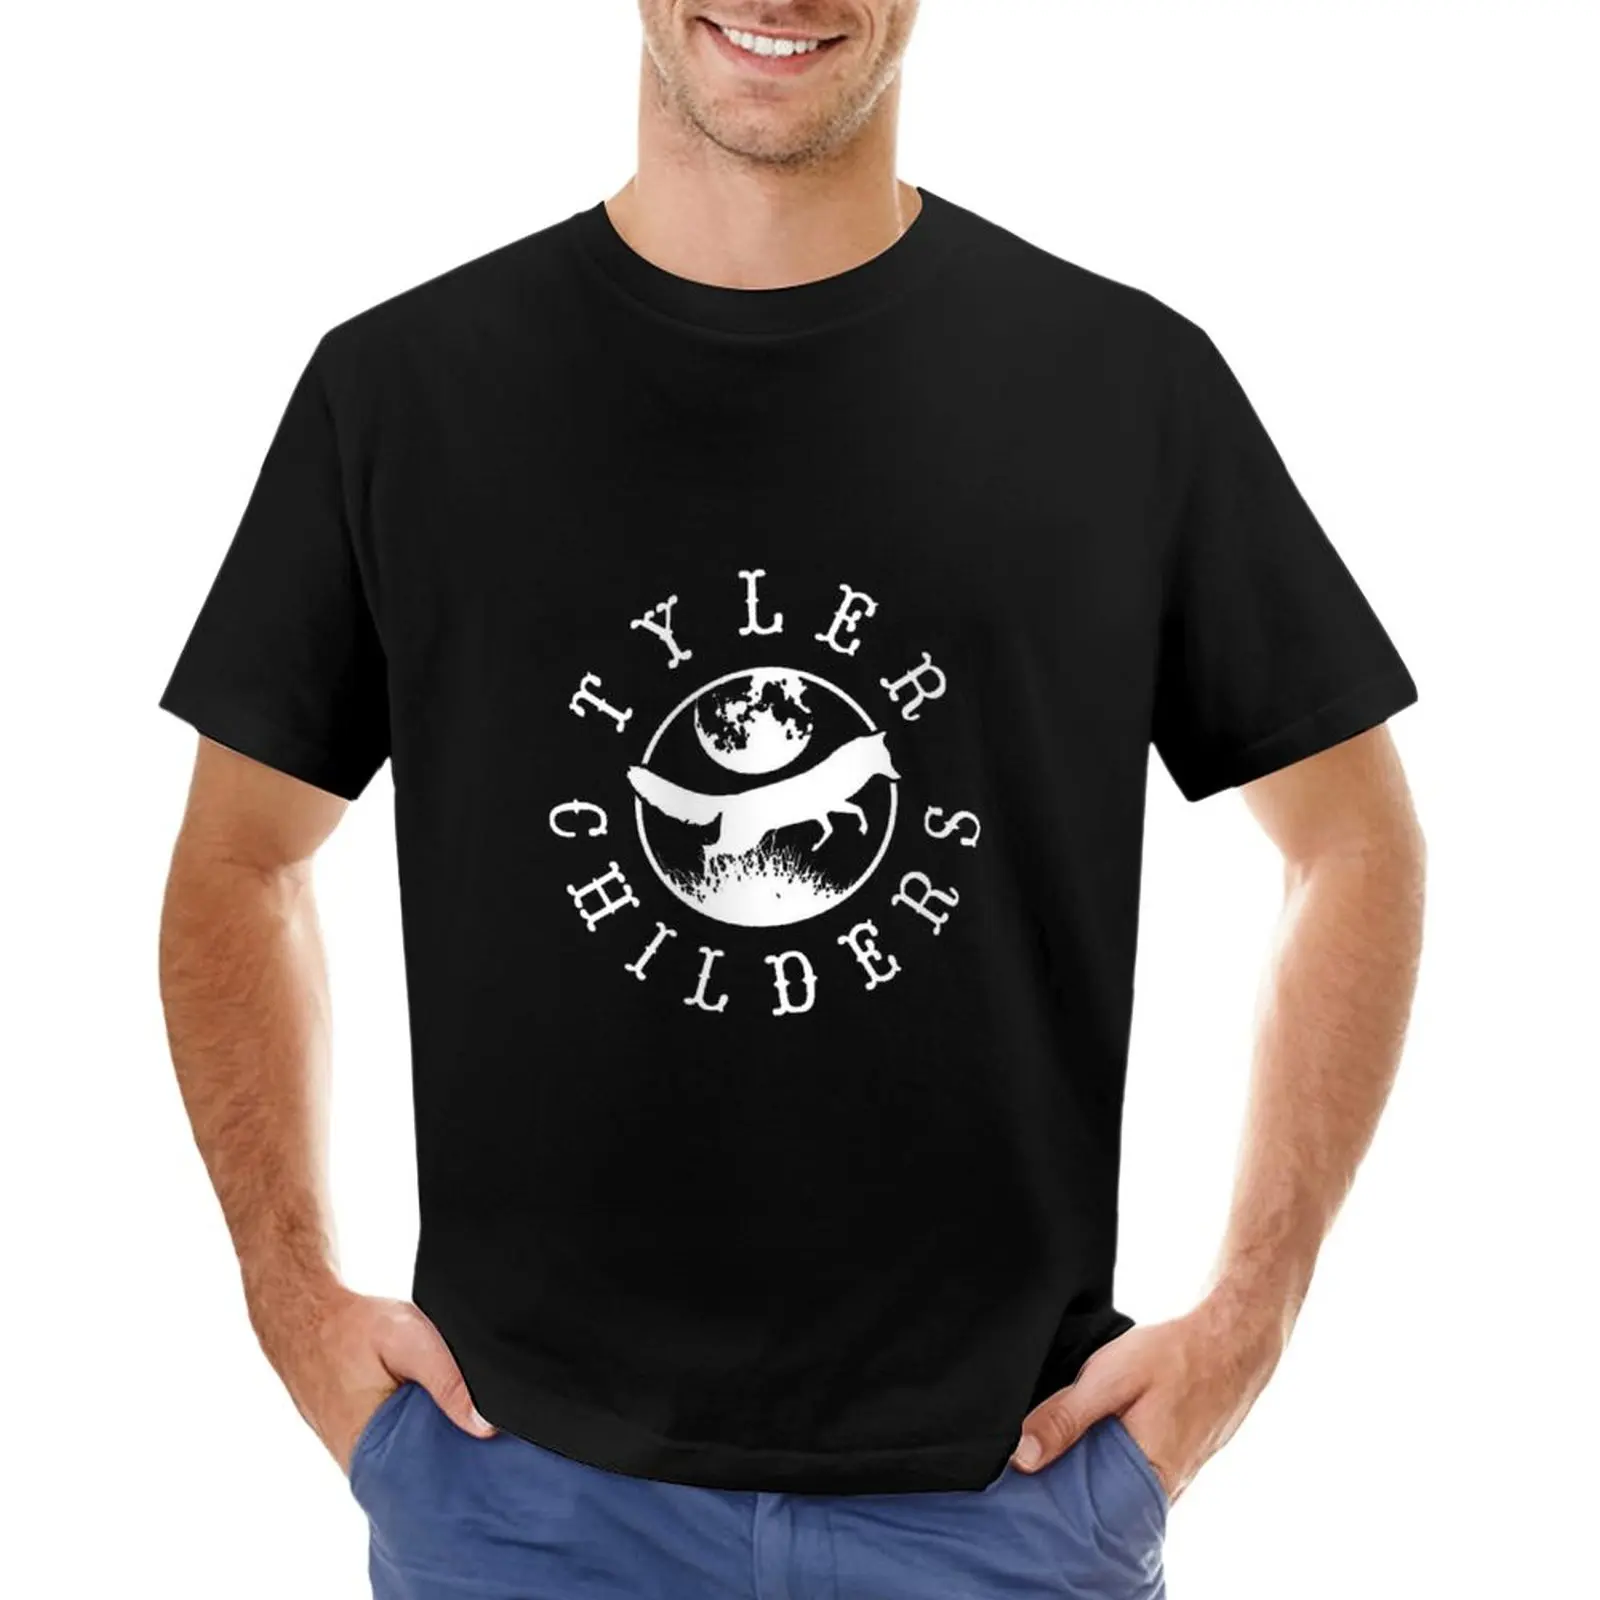 

Tyler 'Childers Best Seller T-Shirt sweat shirt graphic t shirt cute tops plain t shirts men